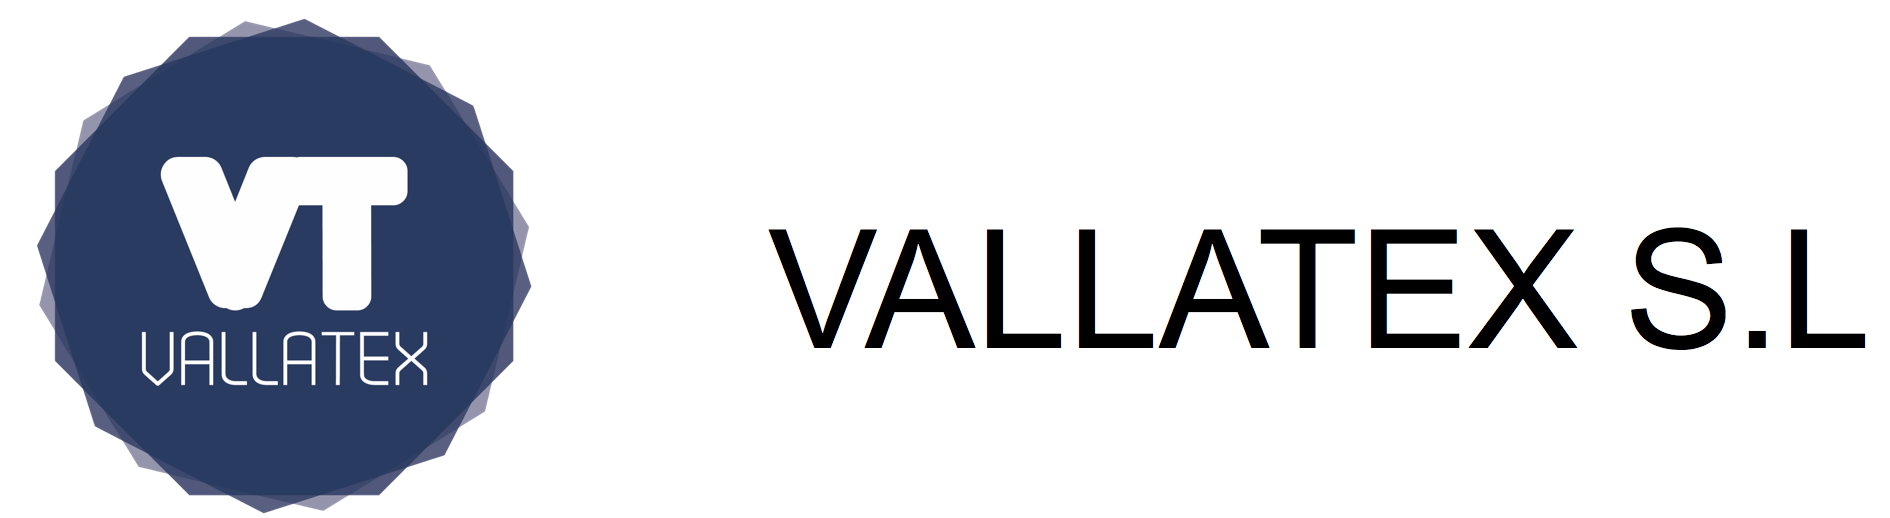 VALLATEX S.L